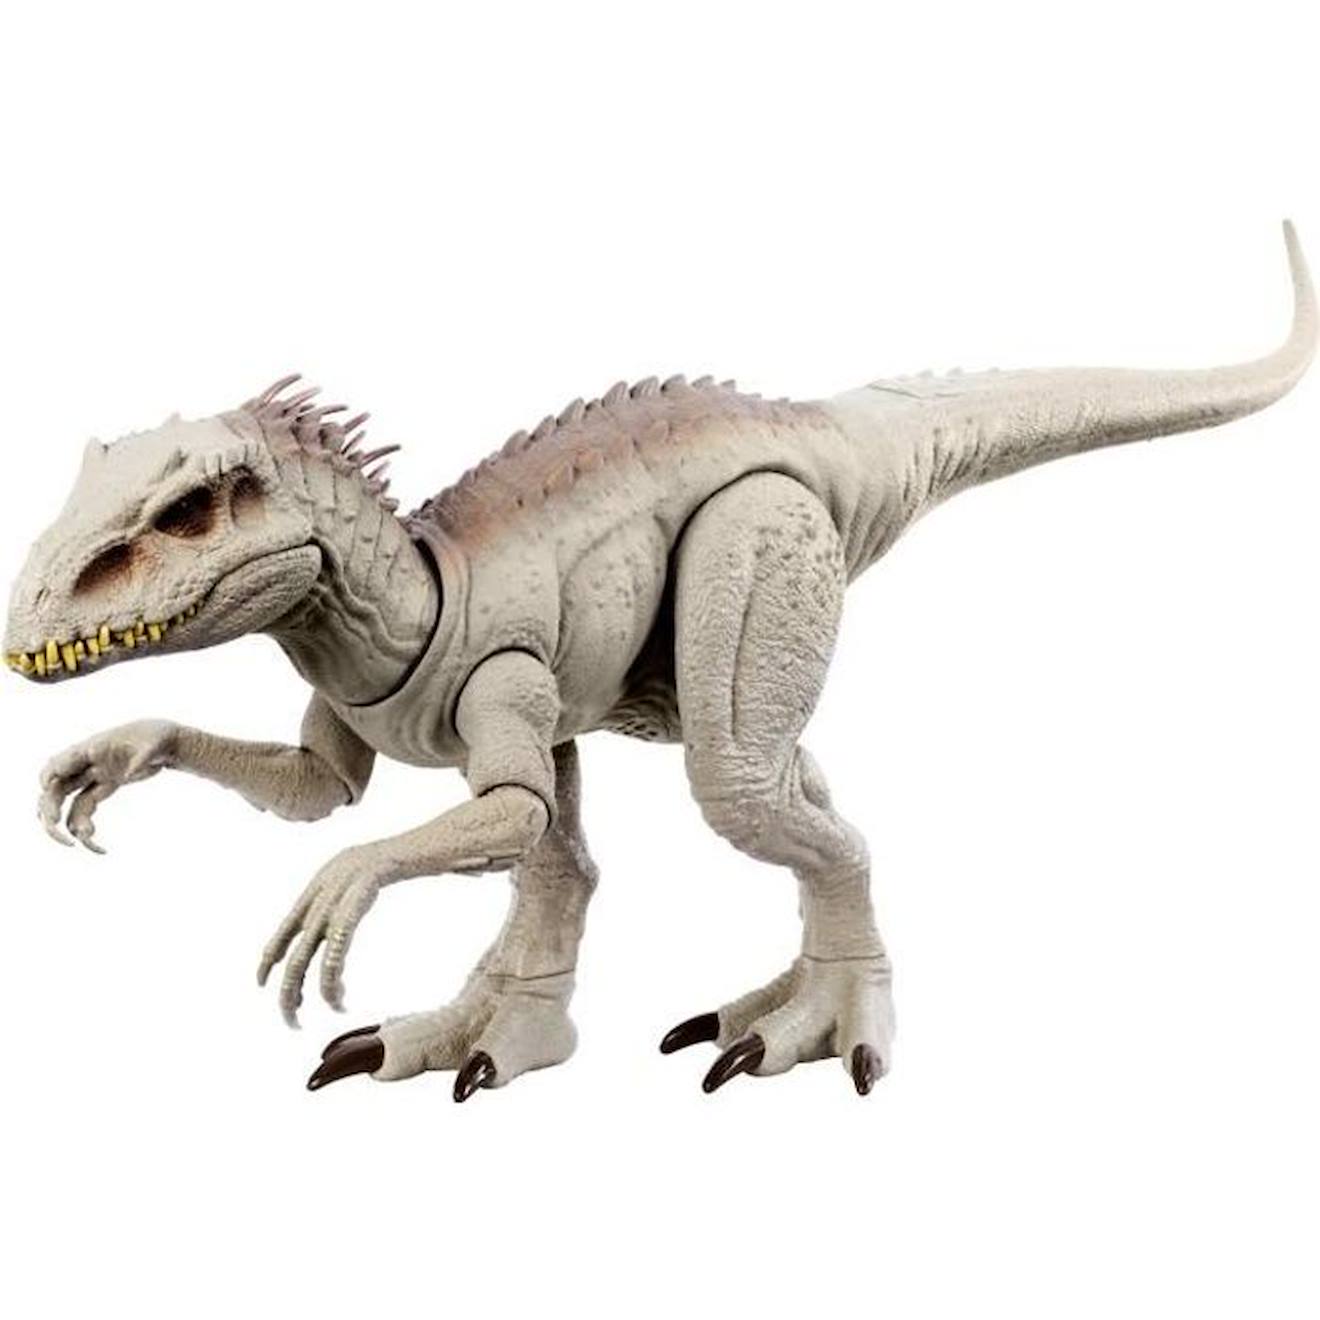 Figurine Indominus Rex Camouflage - Mattel - Hnt63 - Dinosaur Jurassic World Blanc